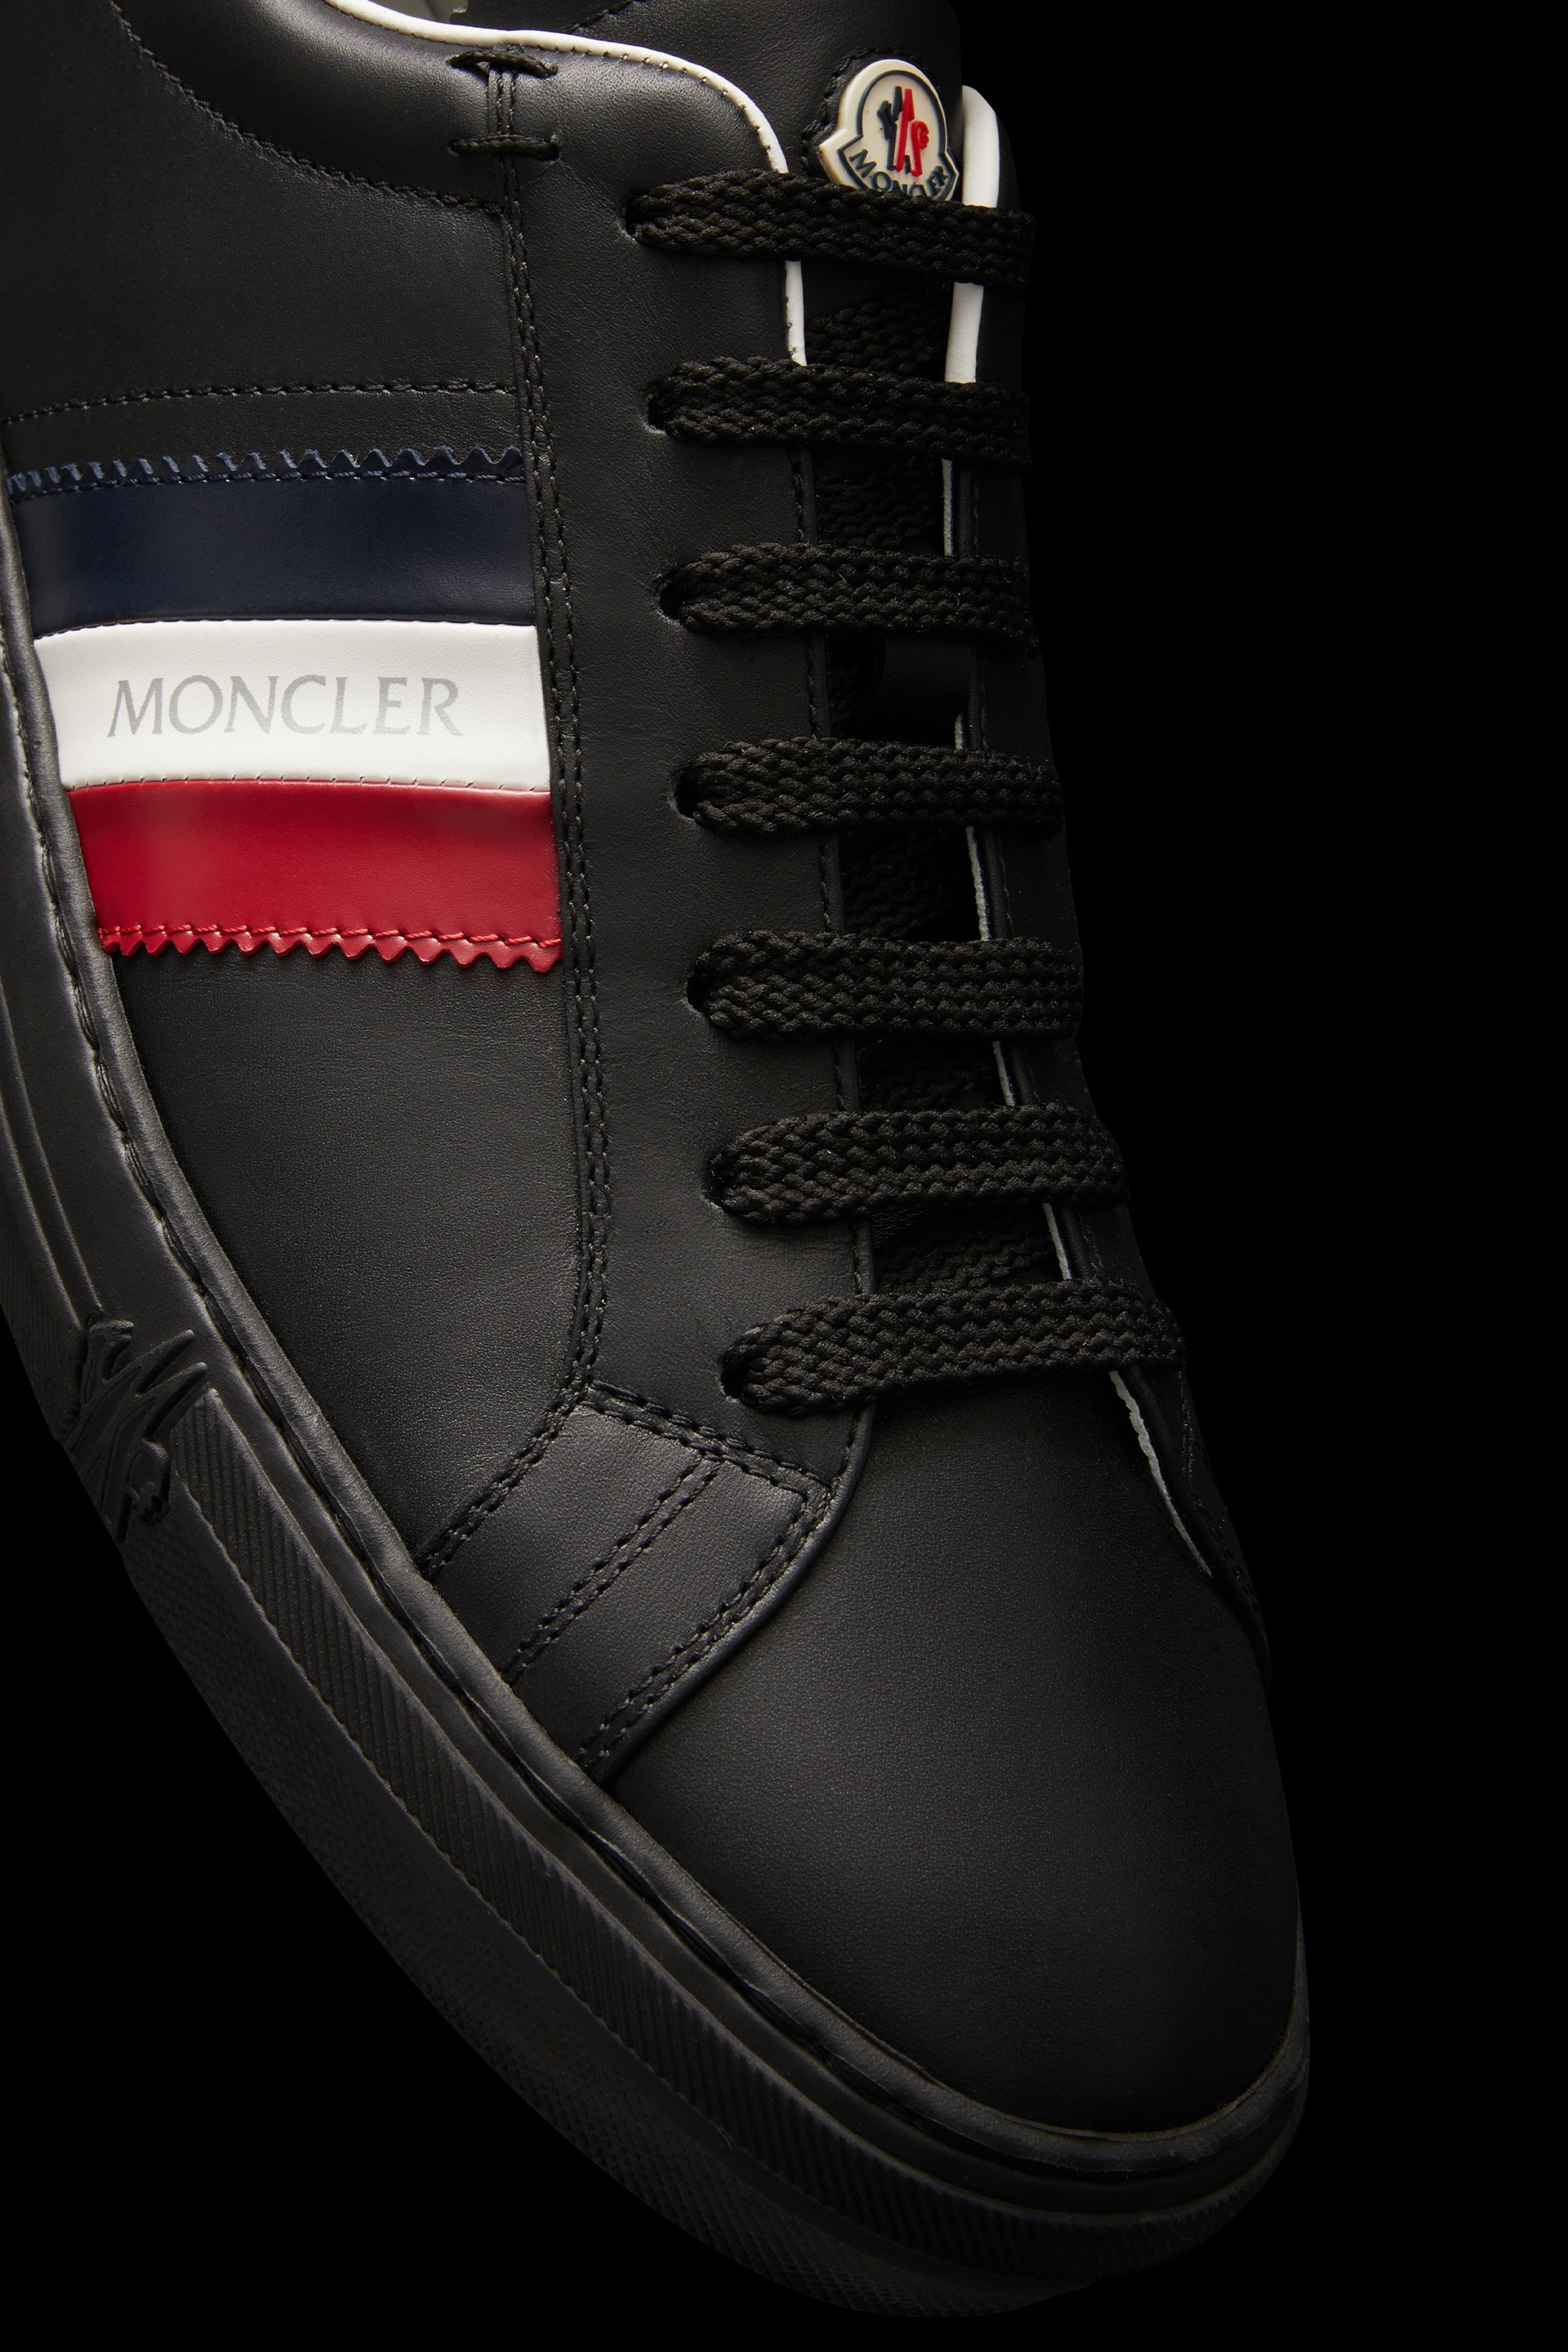 New Monaco Sneakers - 4